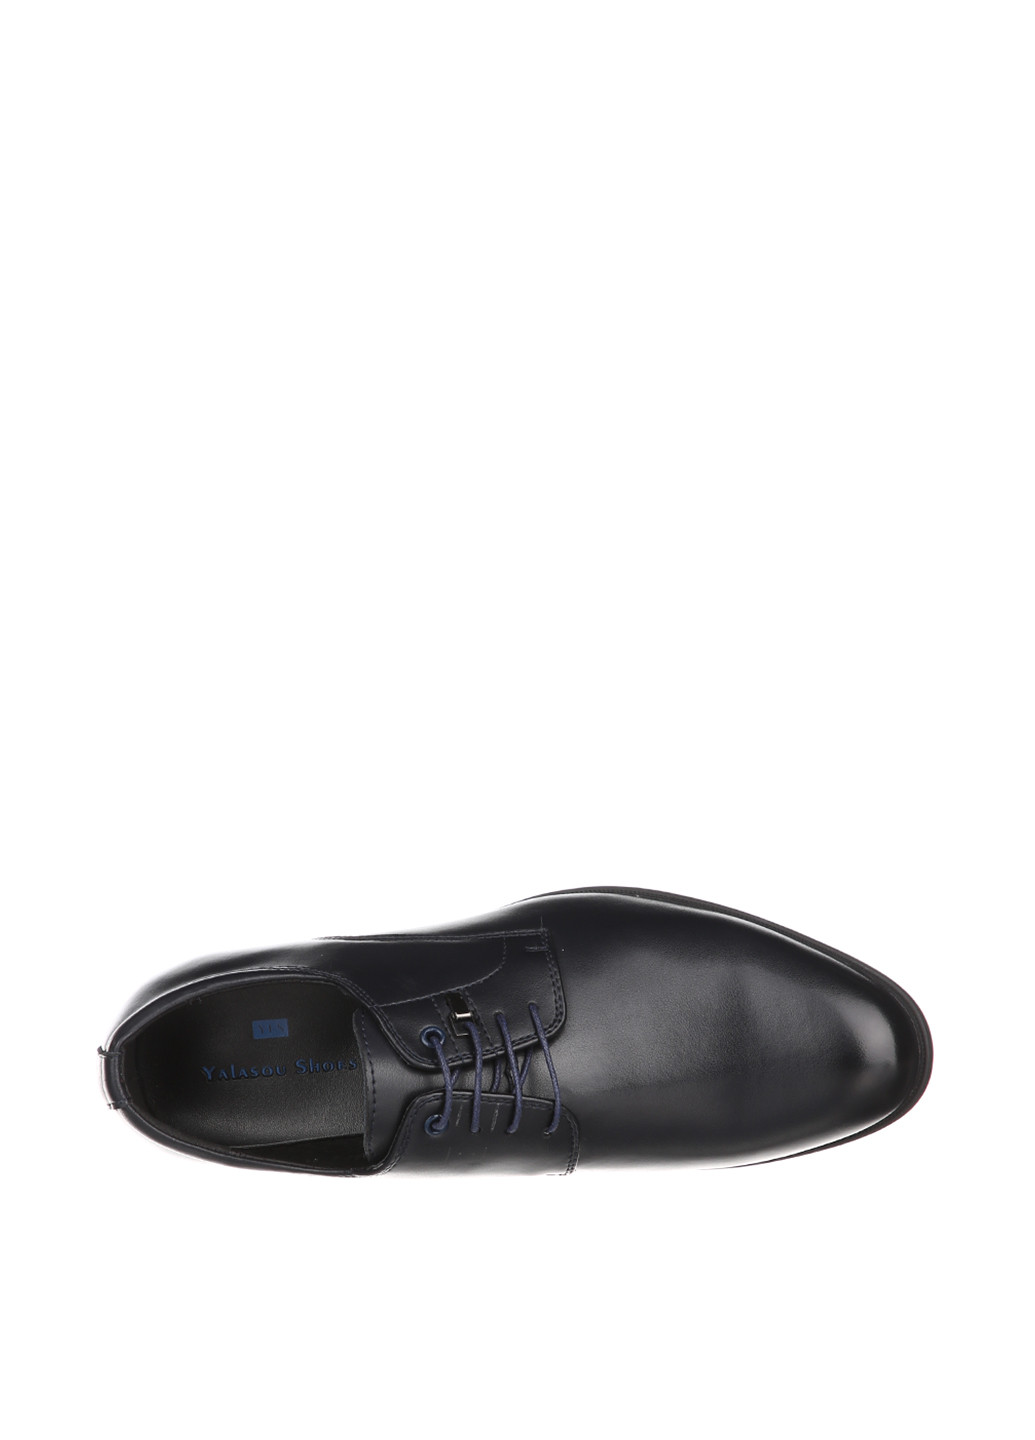 Темно-синие кэжуал туфли Yalasou на шнурках